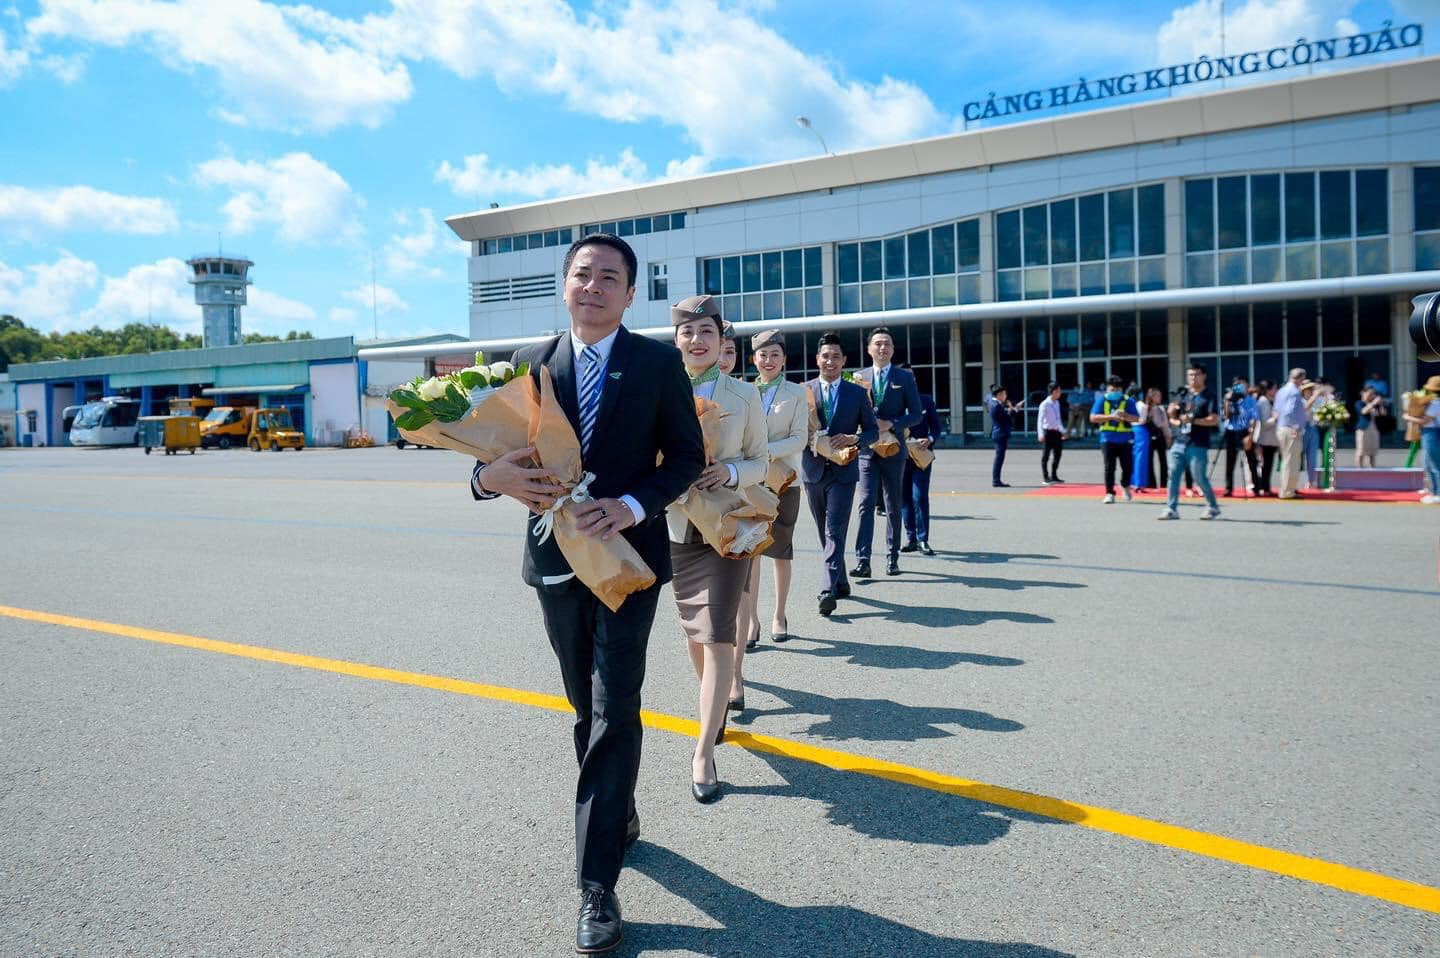 Khai trương 3 đường bay thẳng, Bamboo Airways tặng 1 tỷ đồng tiền mặt hỗ trợ hộ nghèo Côn Đảo - ảnh 3